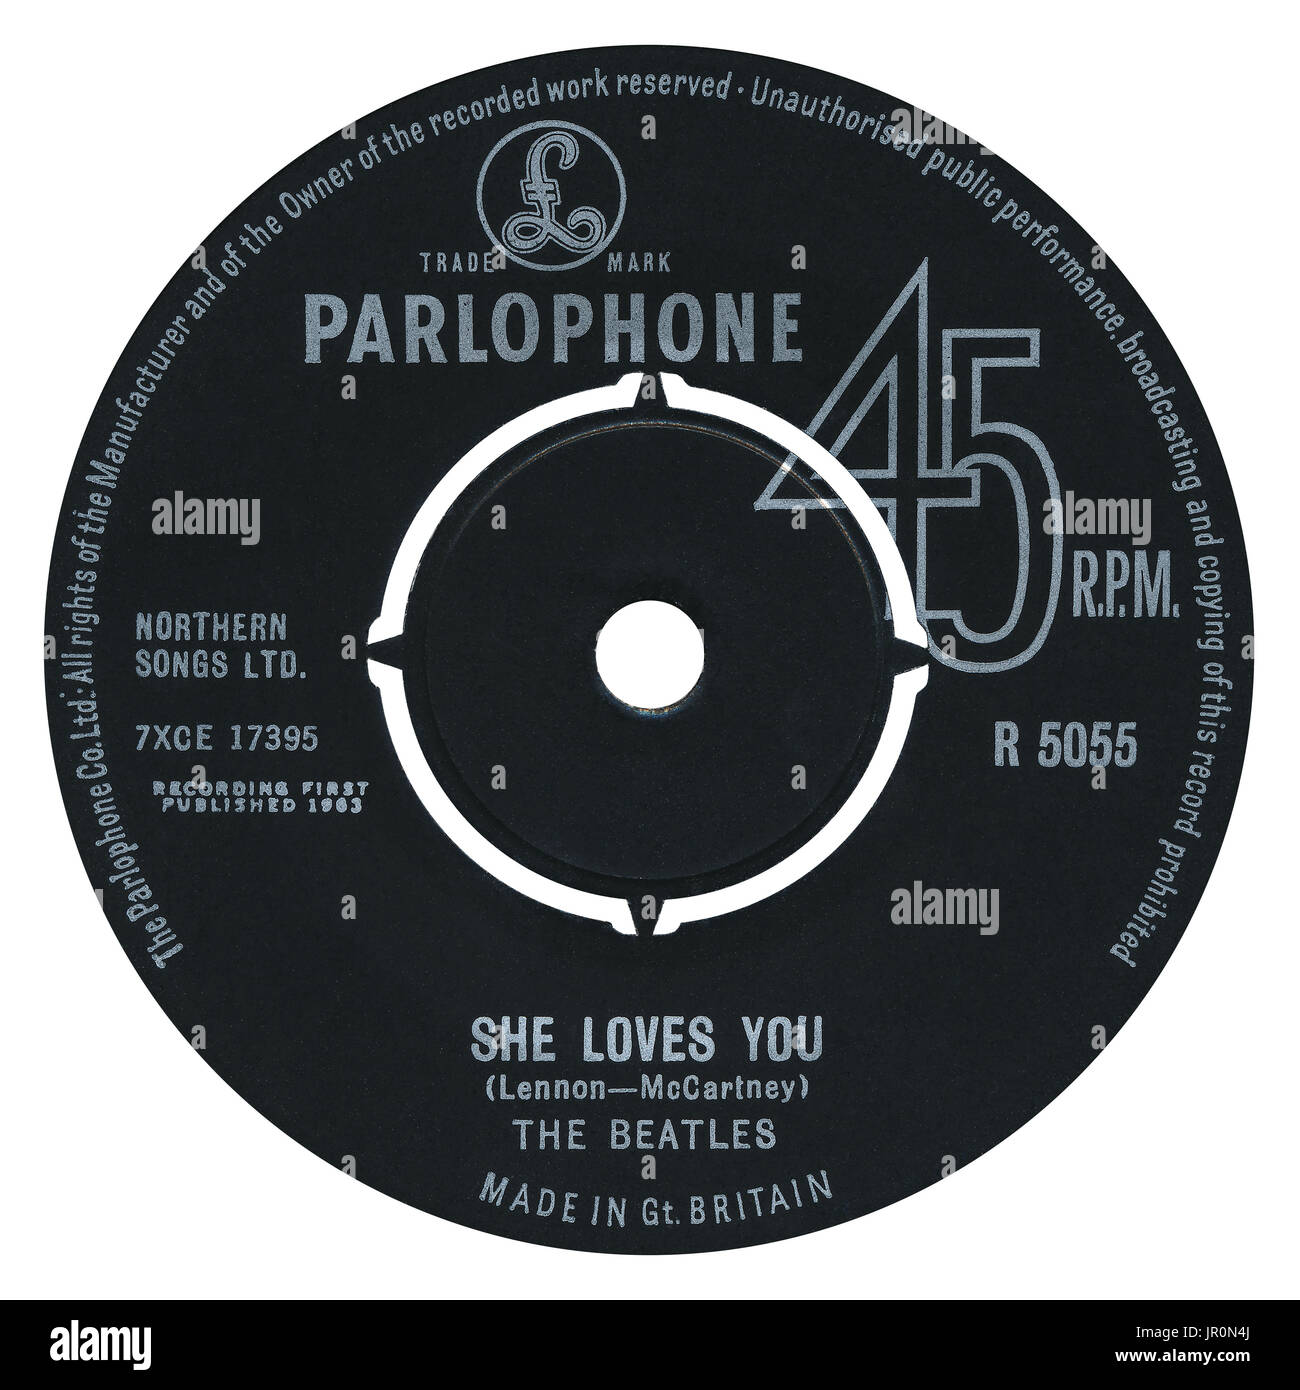 45 RPM 7' UK etichetta discografica di She loves you dei Beatles sull'etichetta Parlophone dal 1963. Foto Stock